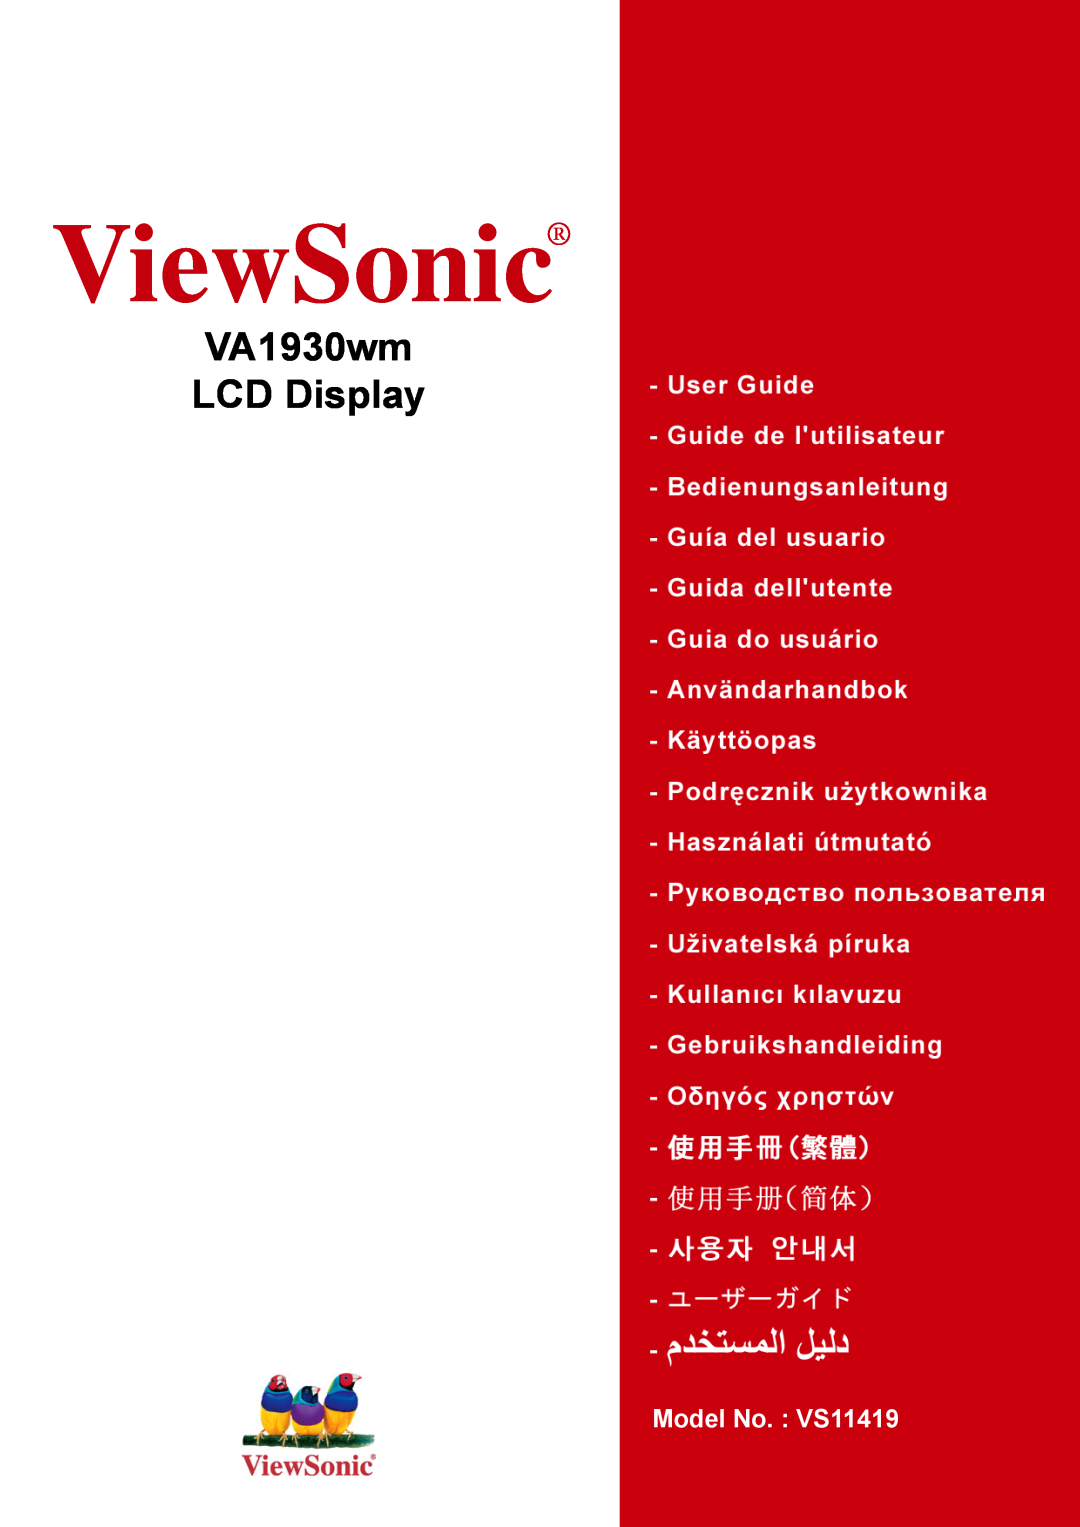 ViewSonic manual ViewSonic, VA1930wm LCD Display, Model No. VS11419 